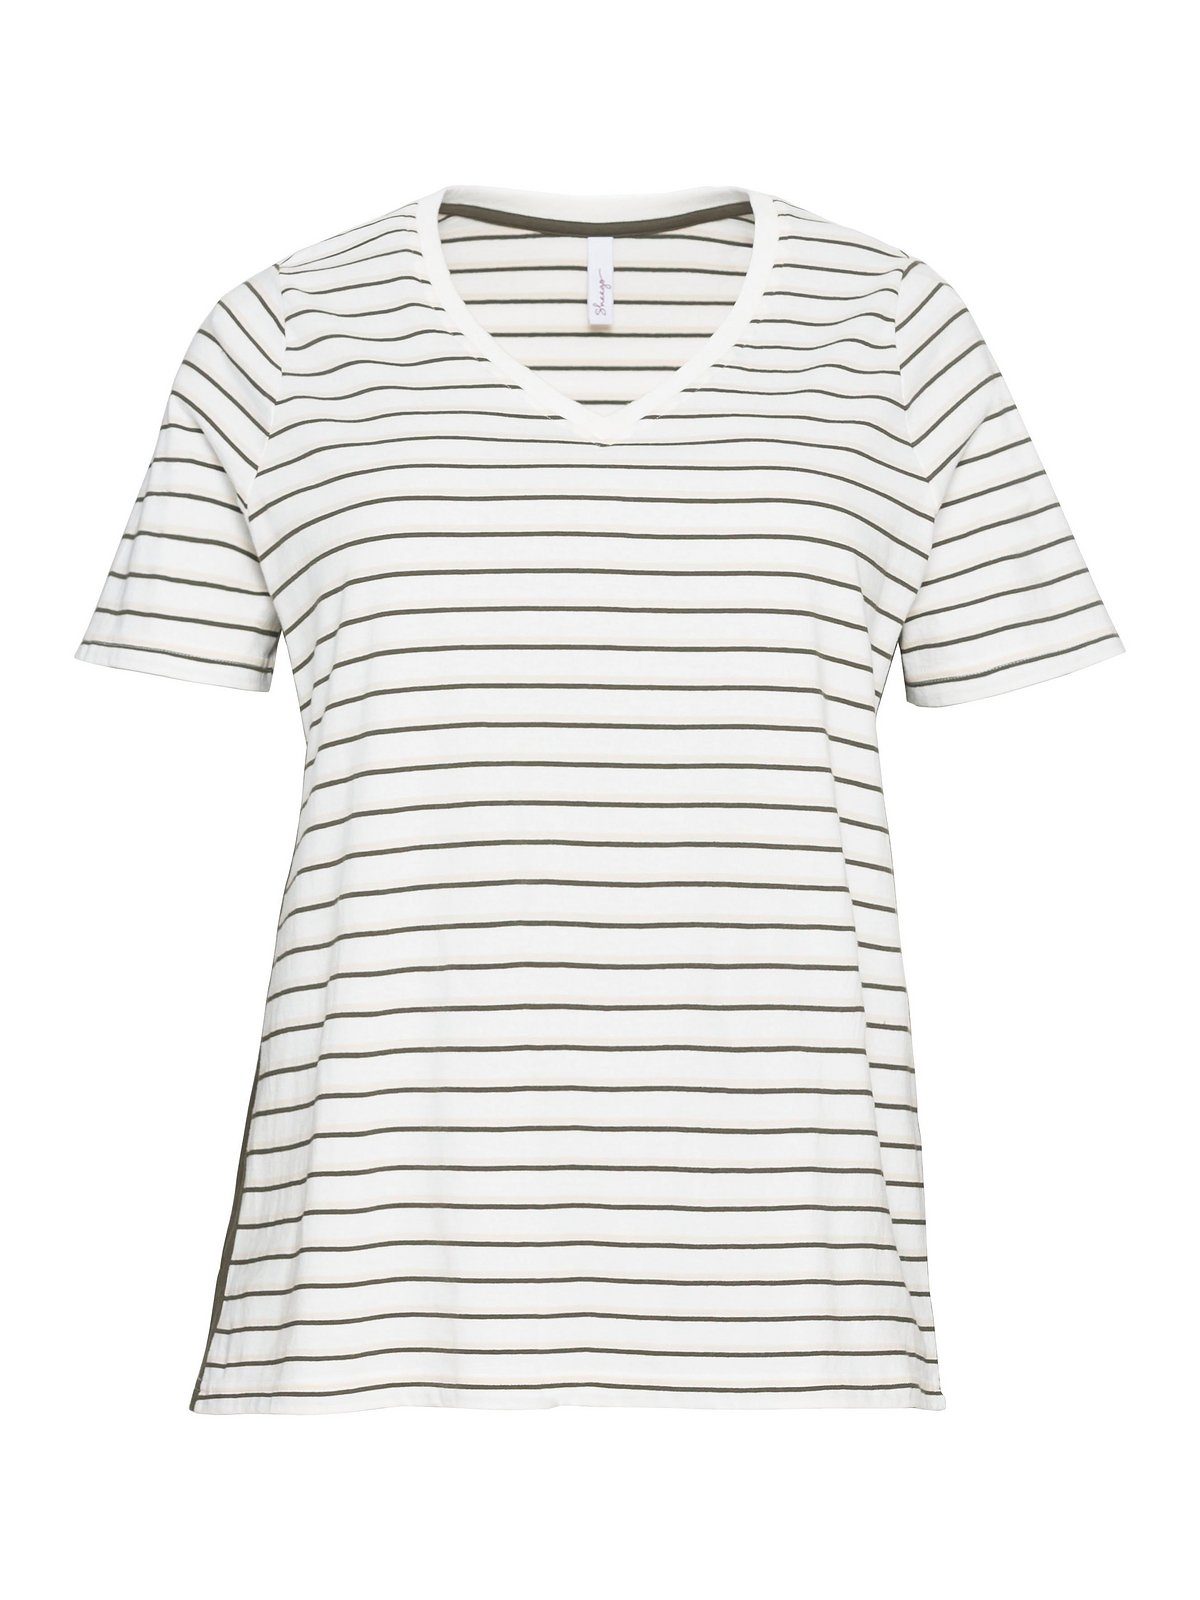 Sheego T-Shirt Große Größen V-Ausschnitt, Jersey mit aus weichem